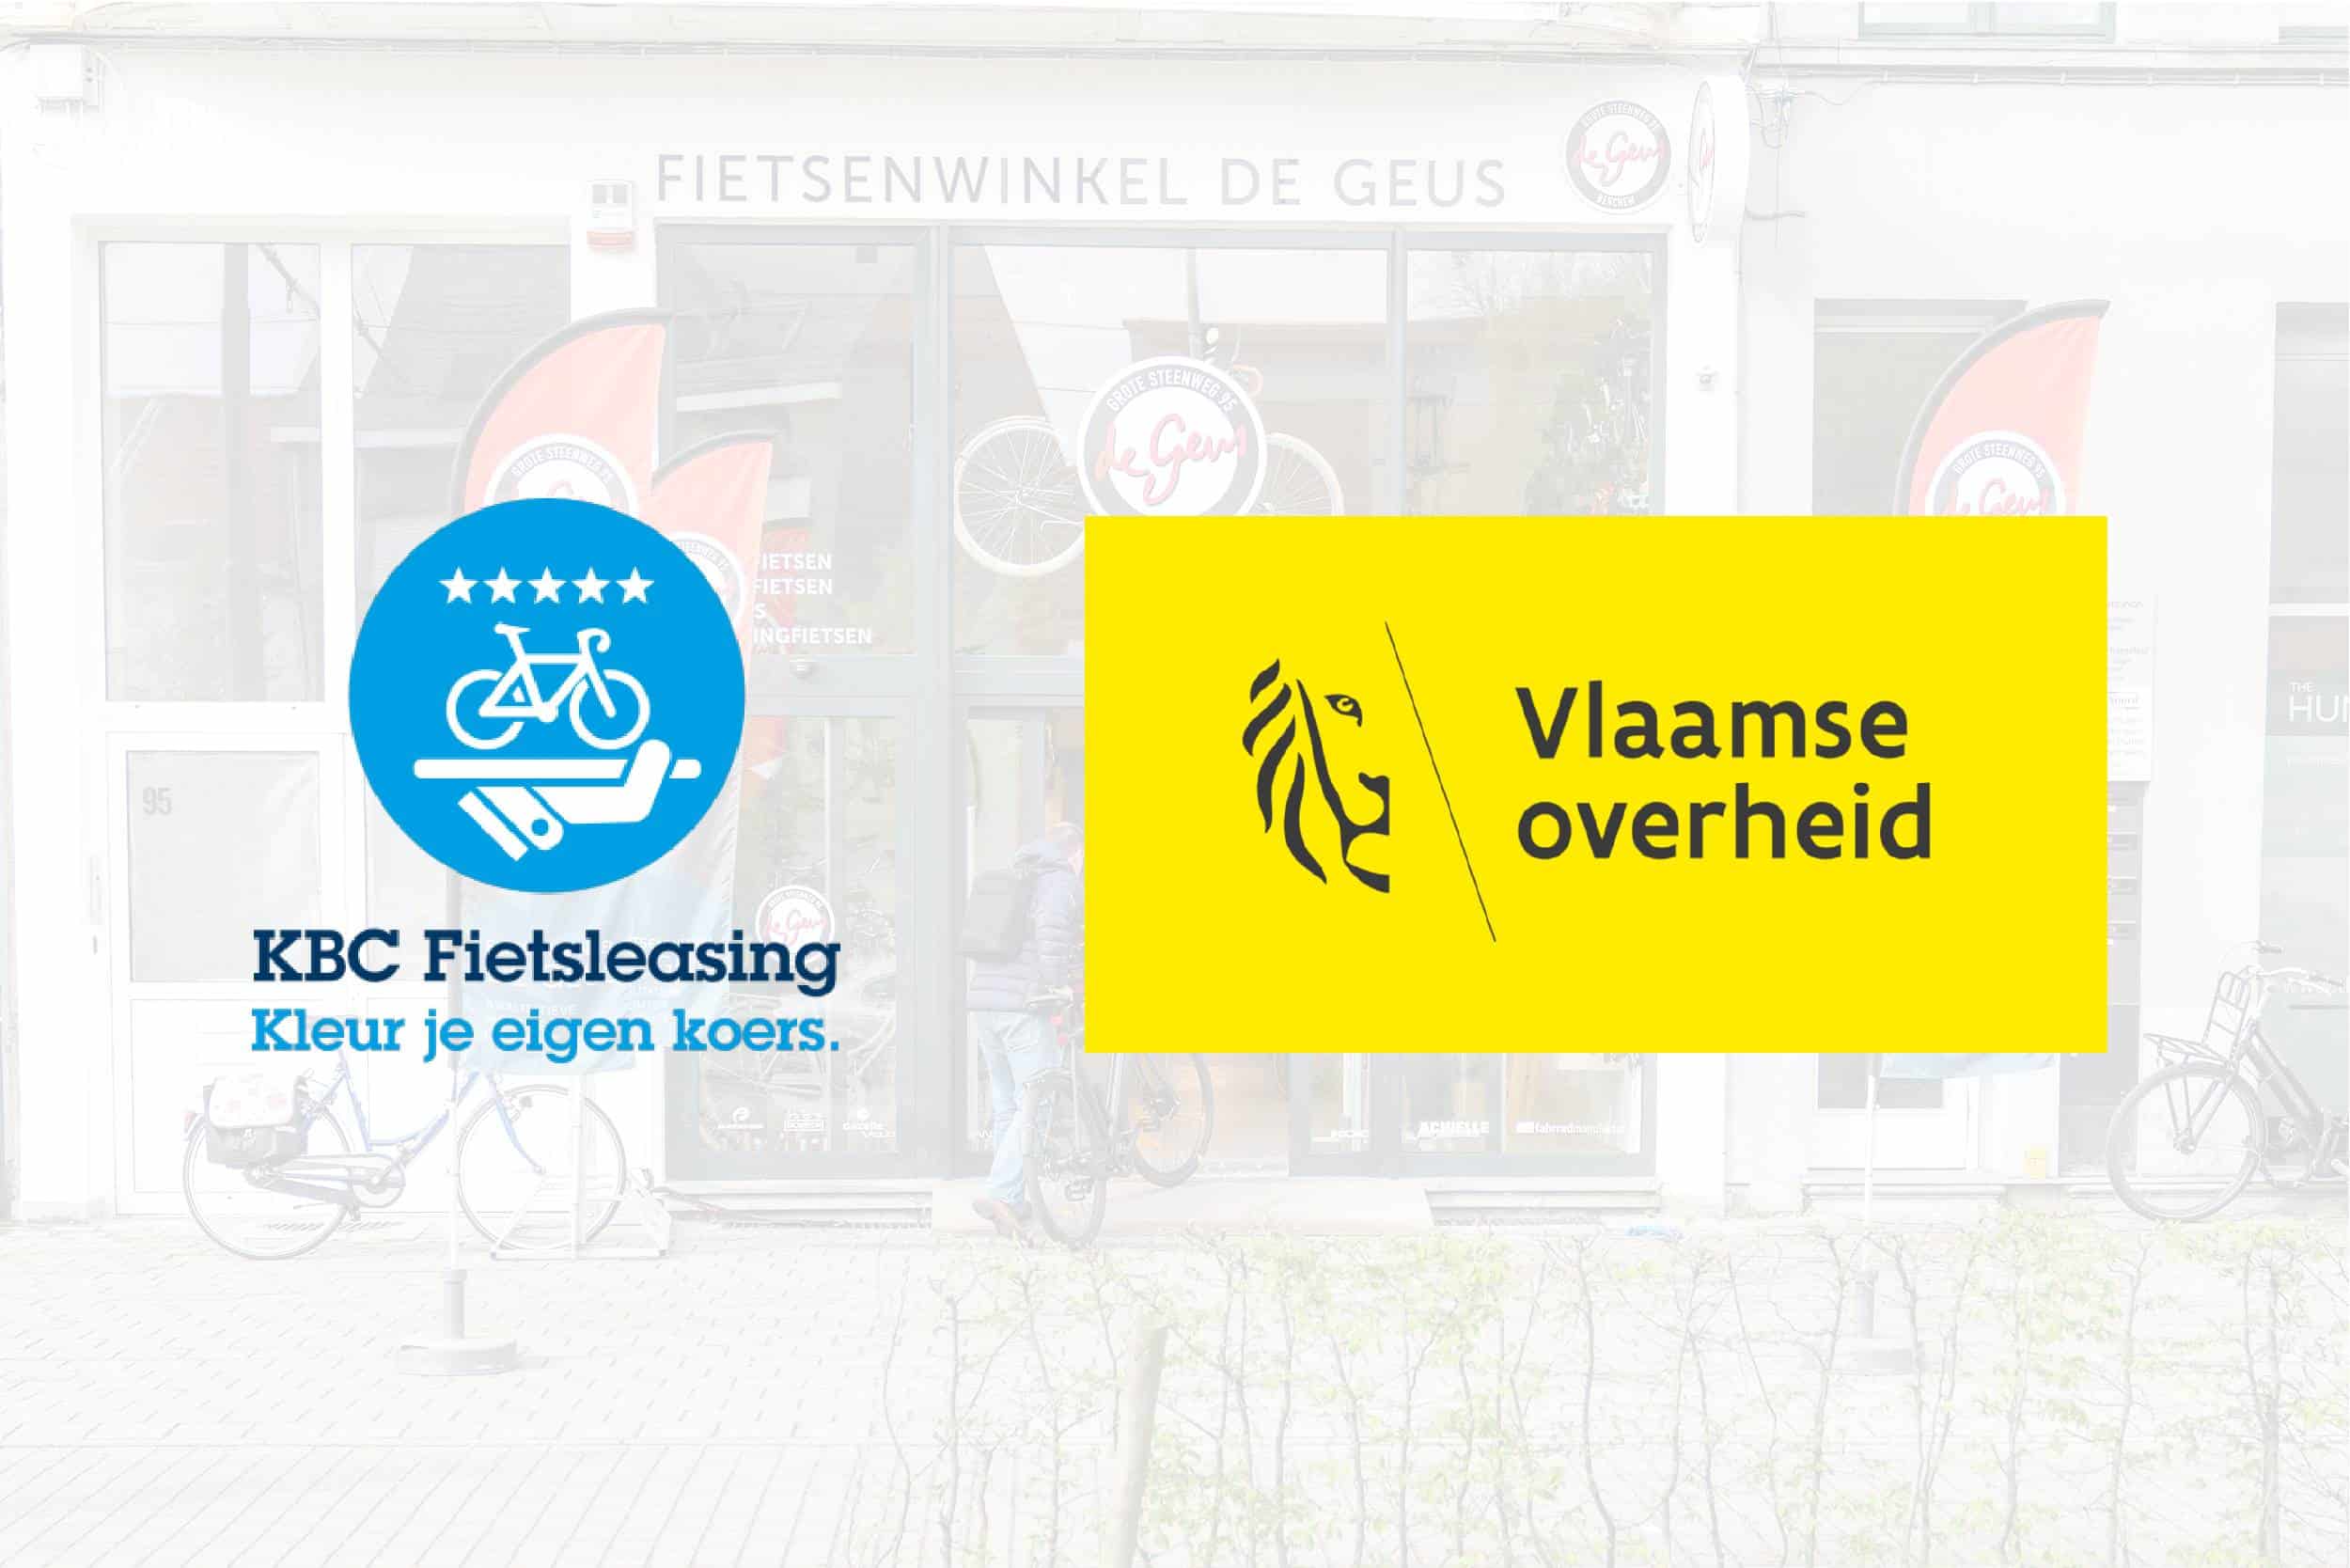 Fietslease ambtenaren Vlaanderen KBC Fietsleasing